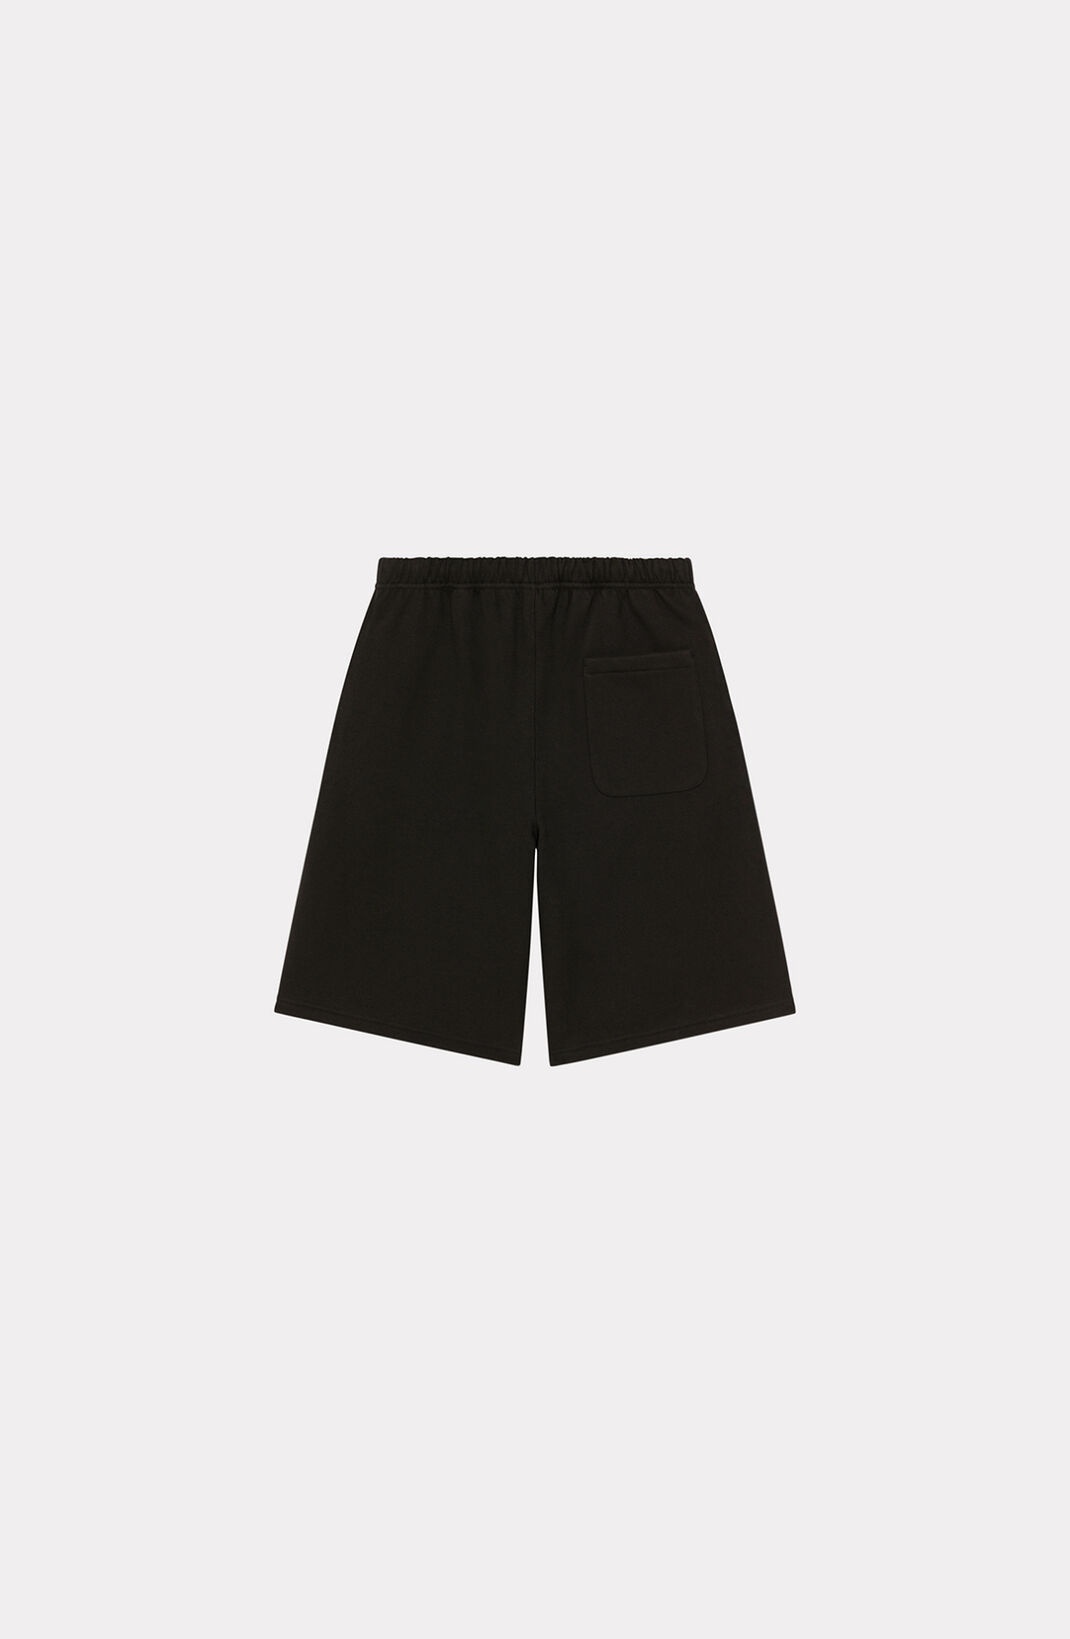 KENZO Paris shorts - 2